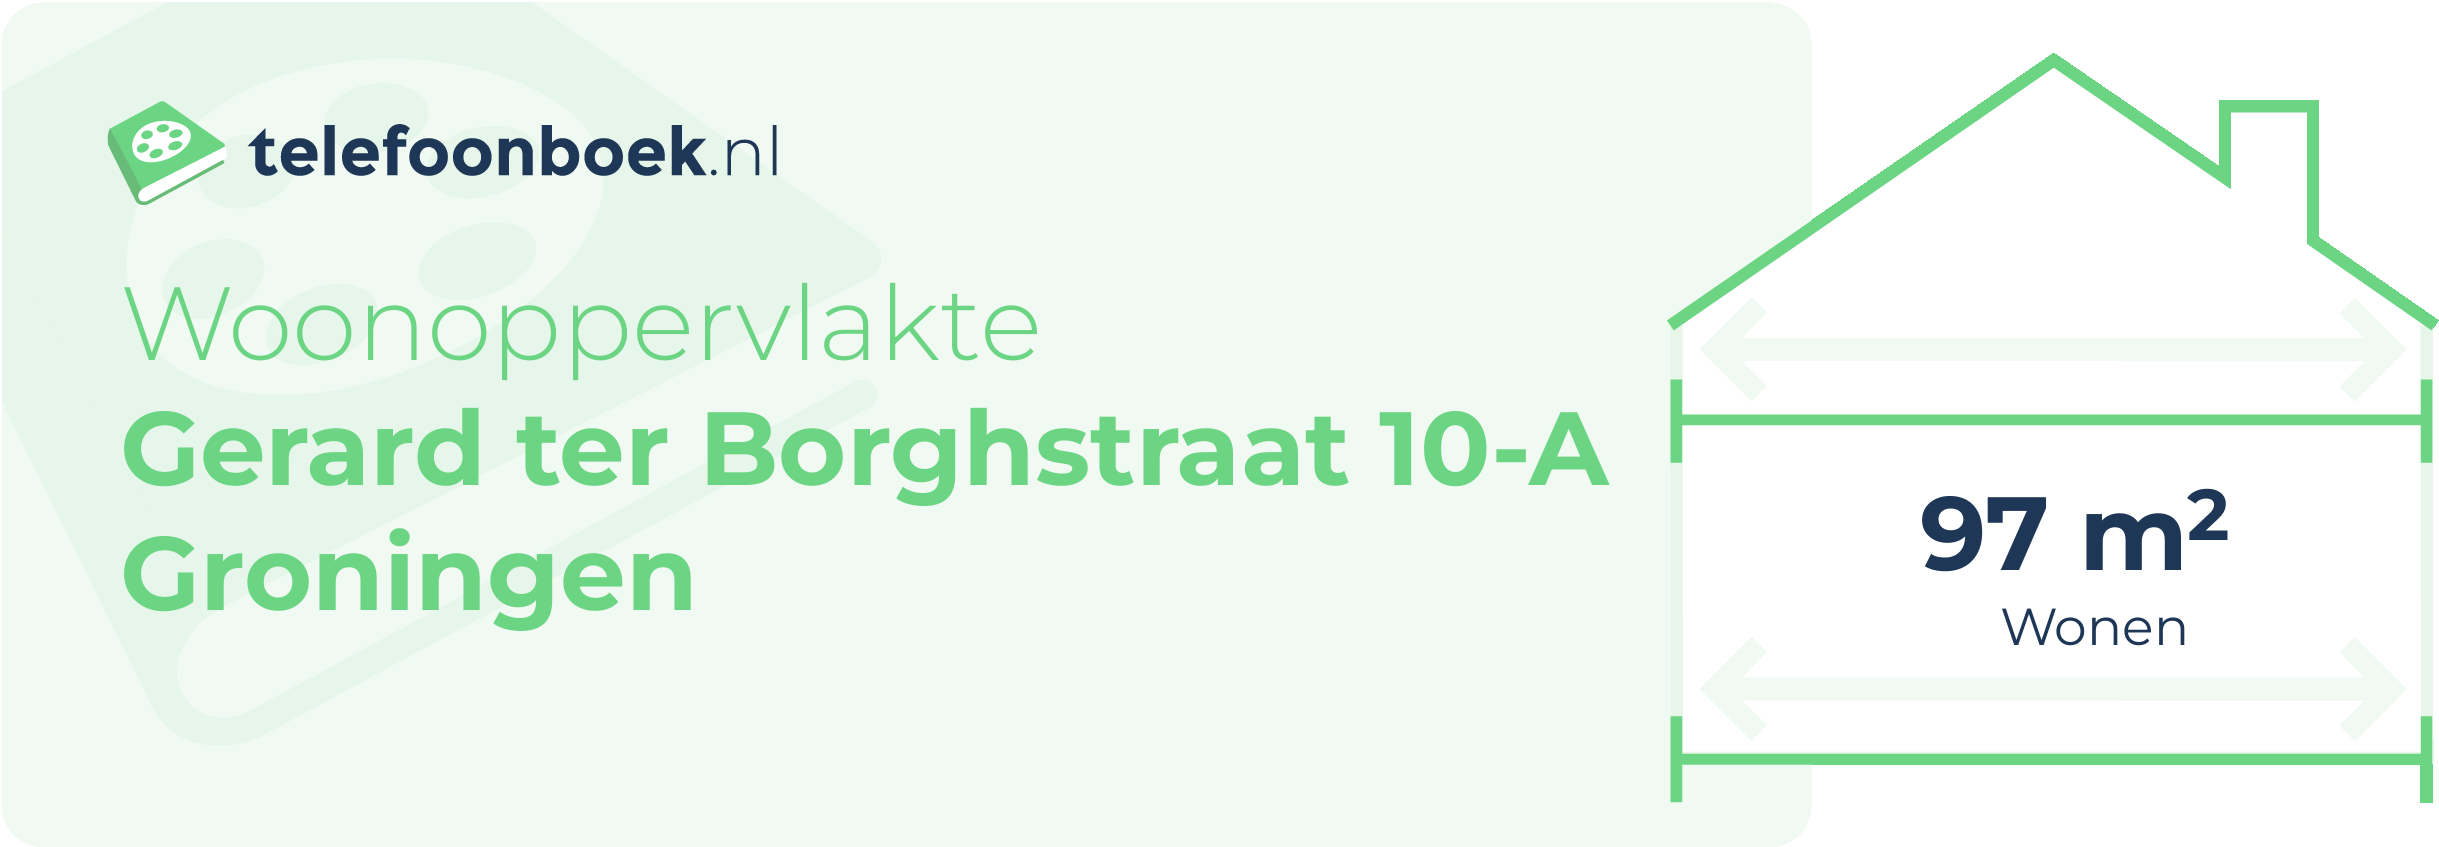 Woonoppervlakte Gerard Ter Borghstraat 10-A Groningen